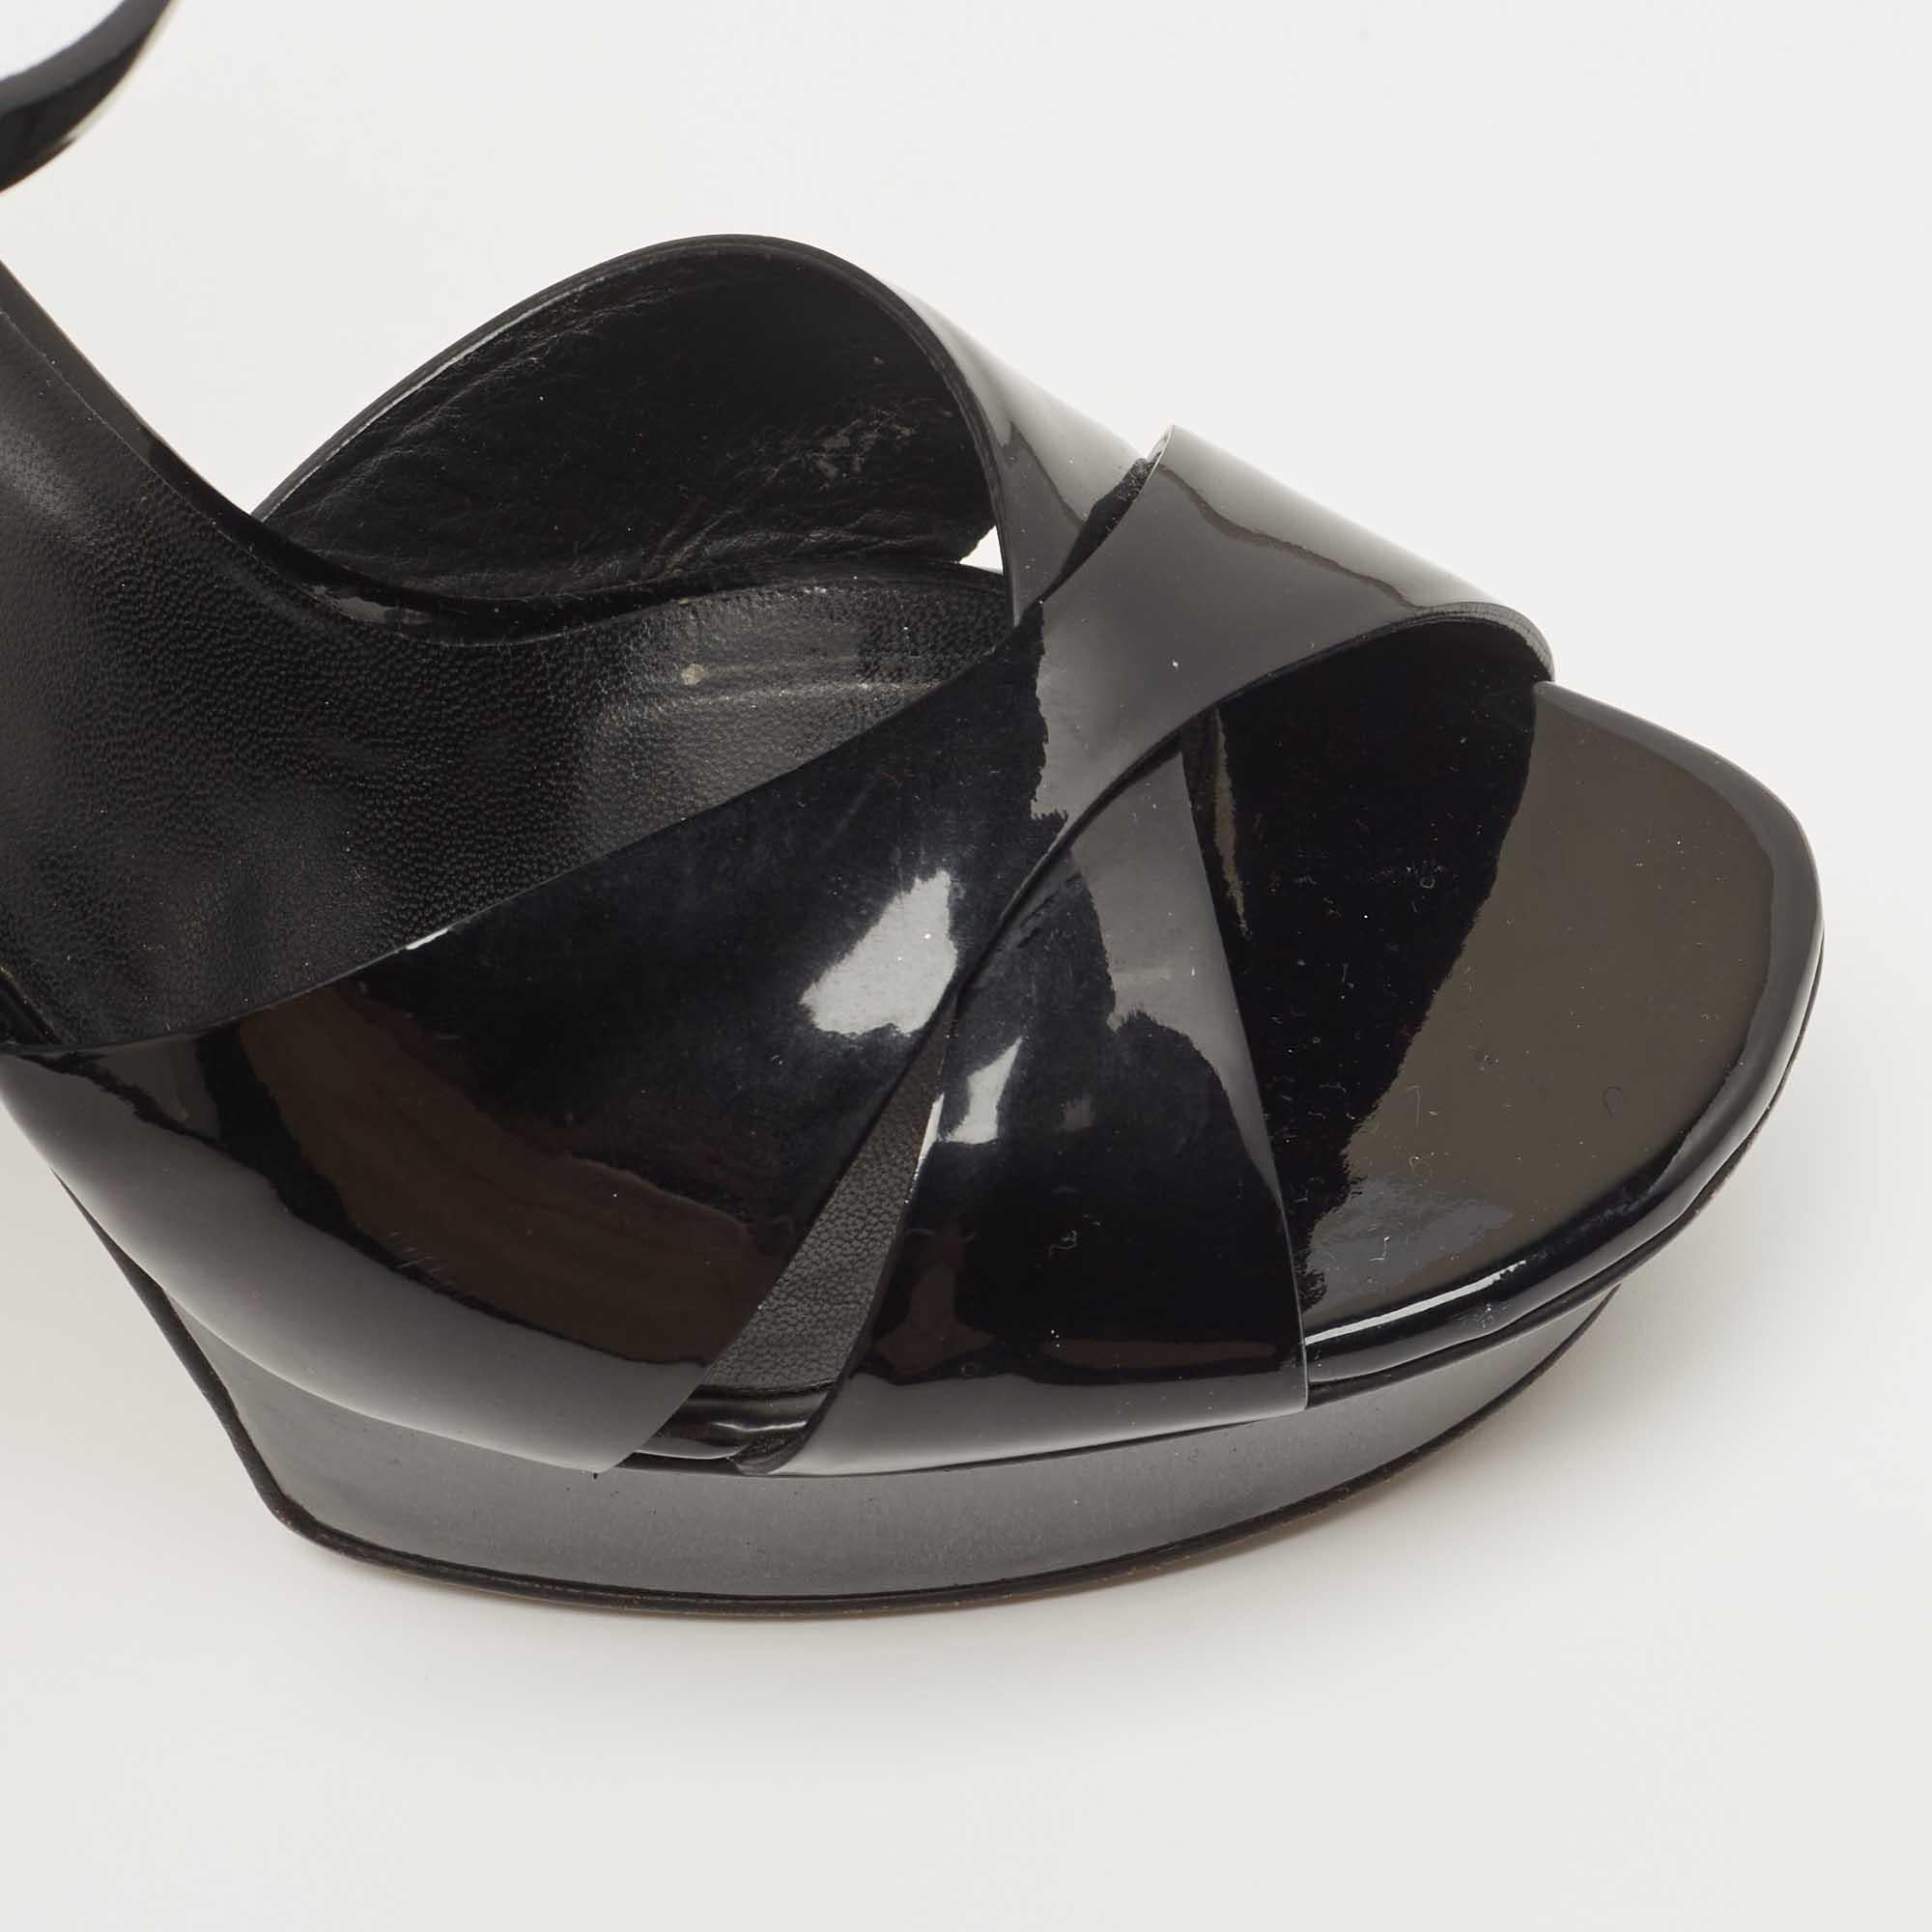 Saint Laurent Black Patent Leather Ankle Strap Sandals Size 39 3